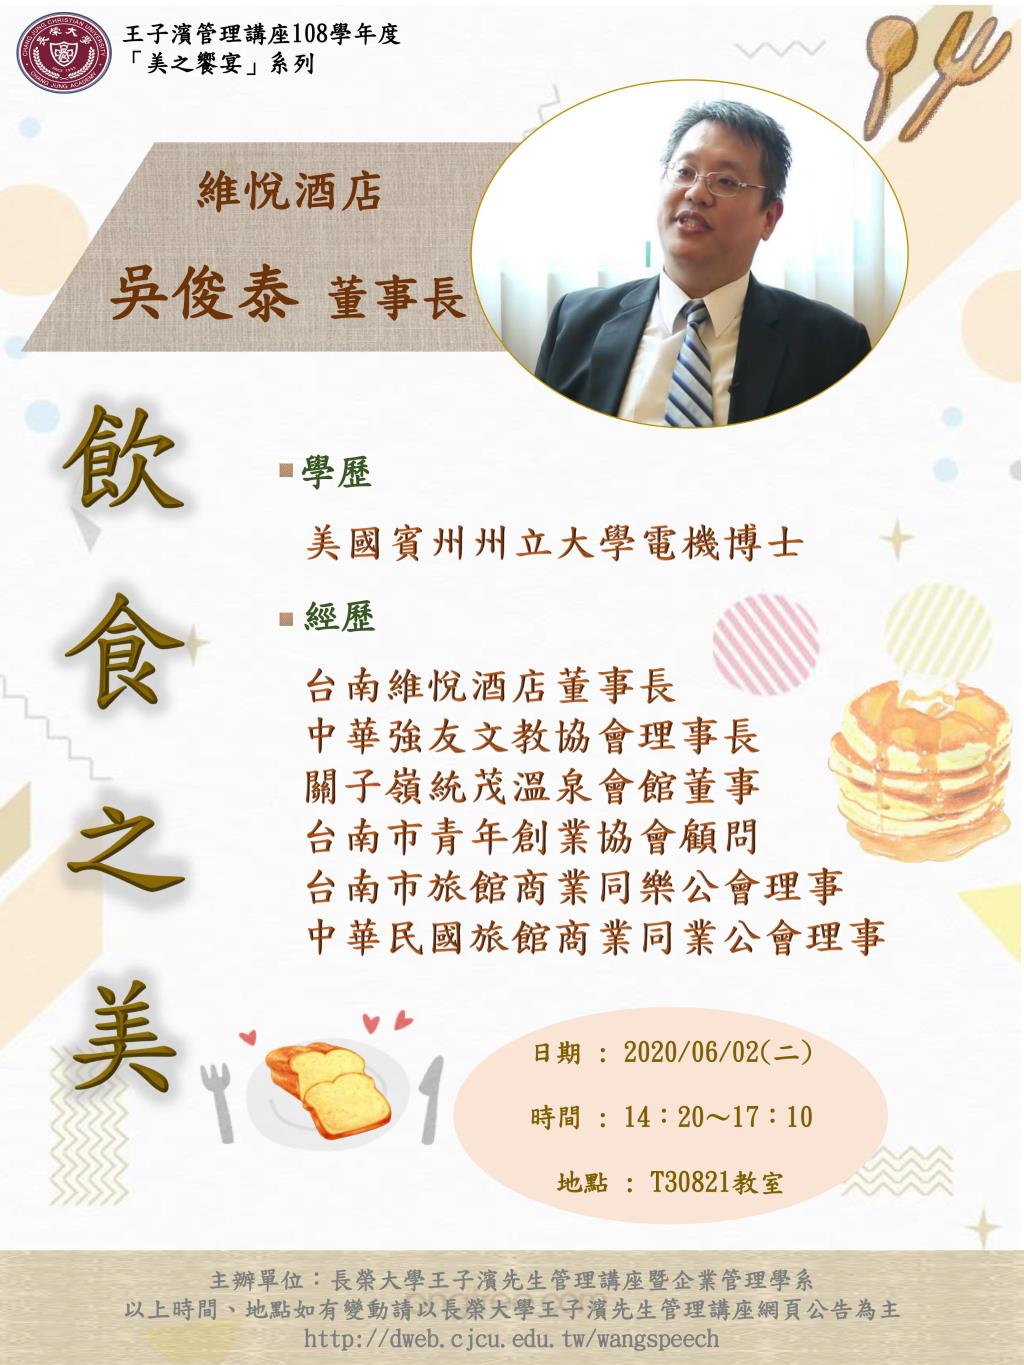 敬邀參加本週二下午(06/02)王子濱先生管理講---飲食之美_王修銘董事長 專題演講